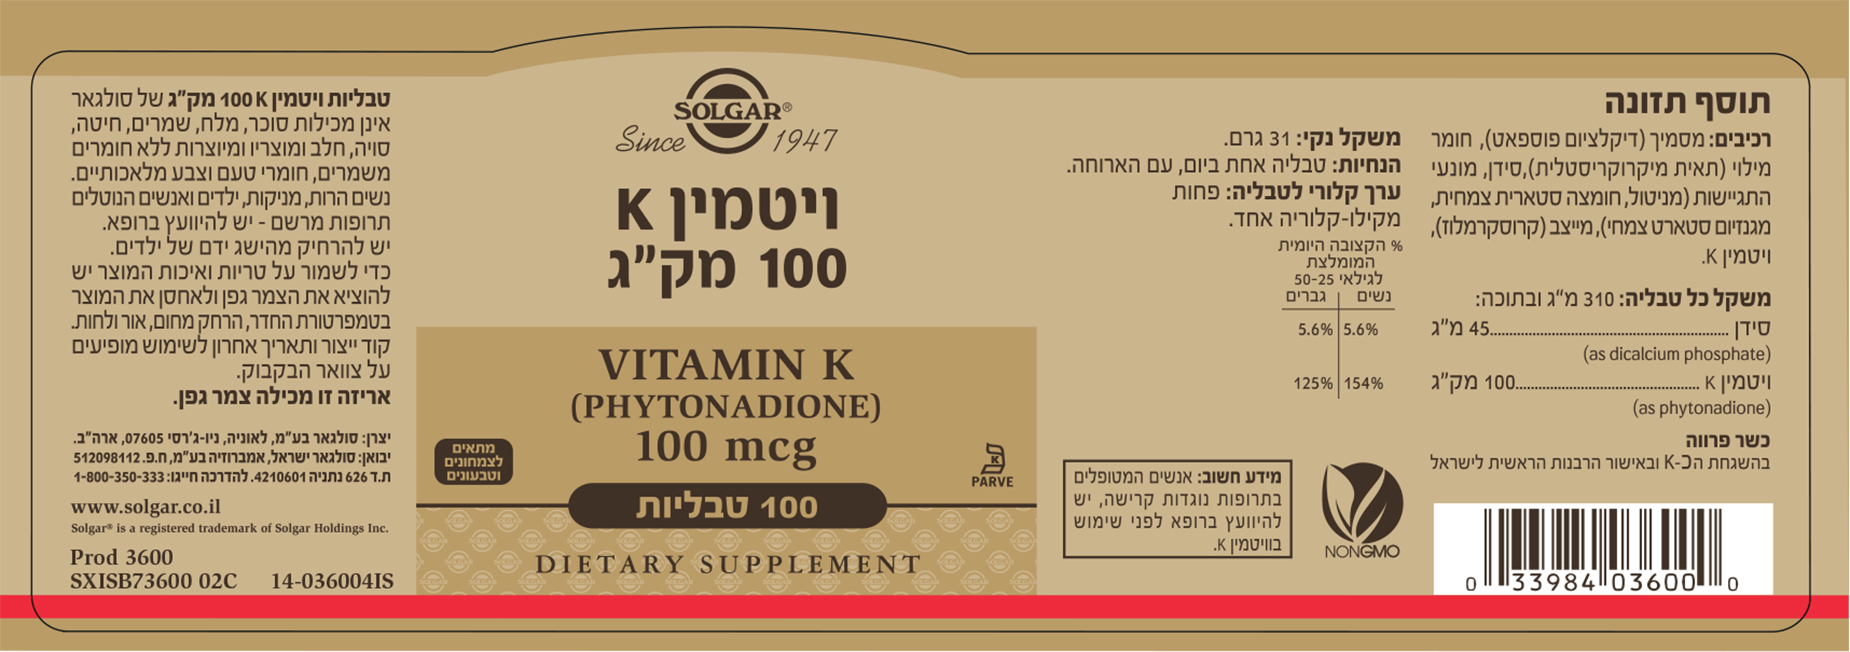 ויטמין K במינון 100 מק"ג